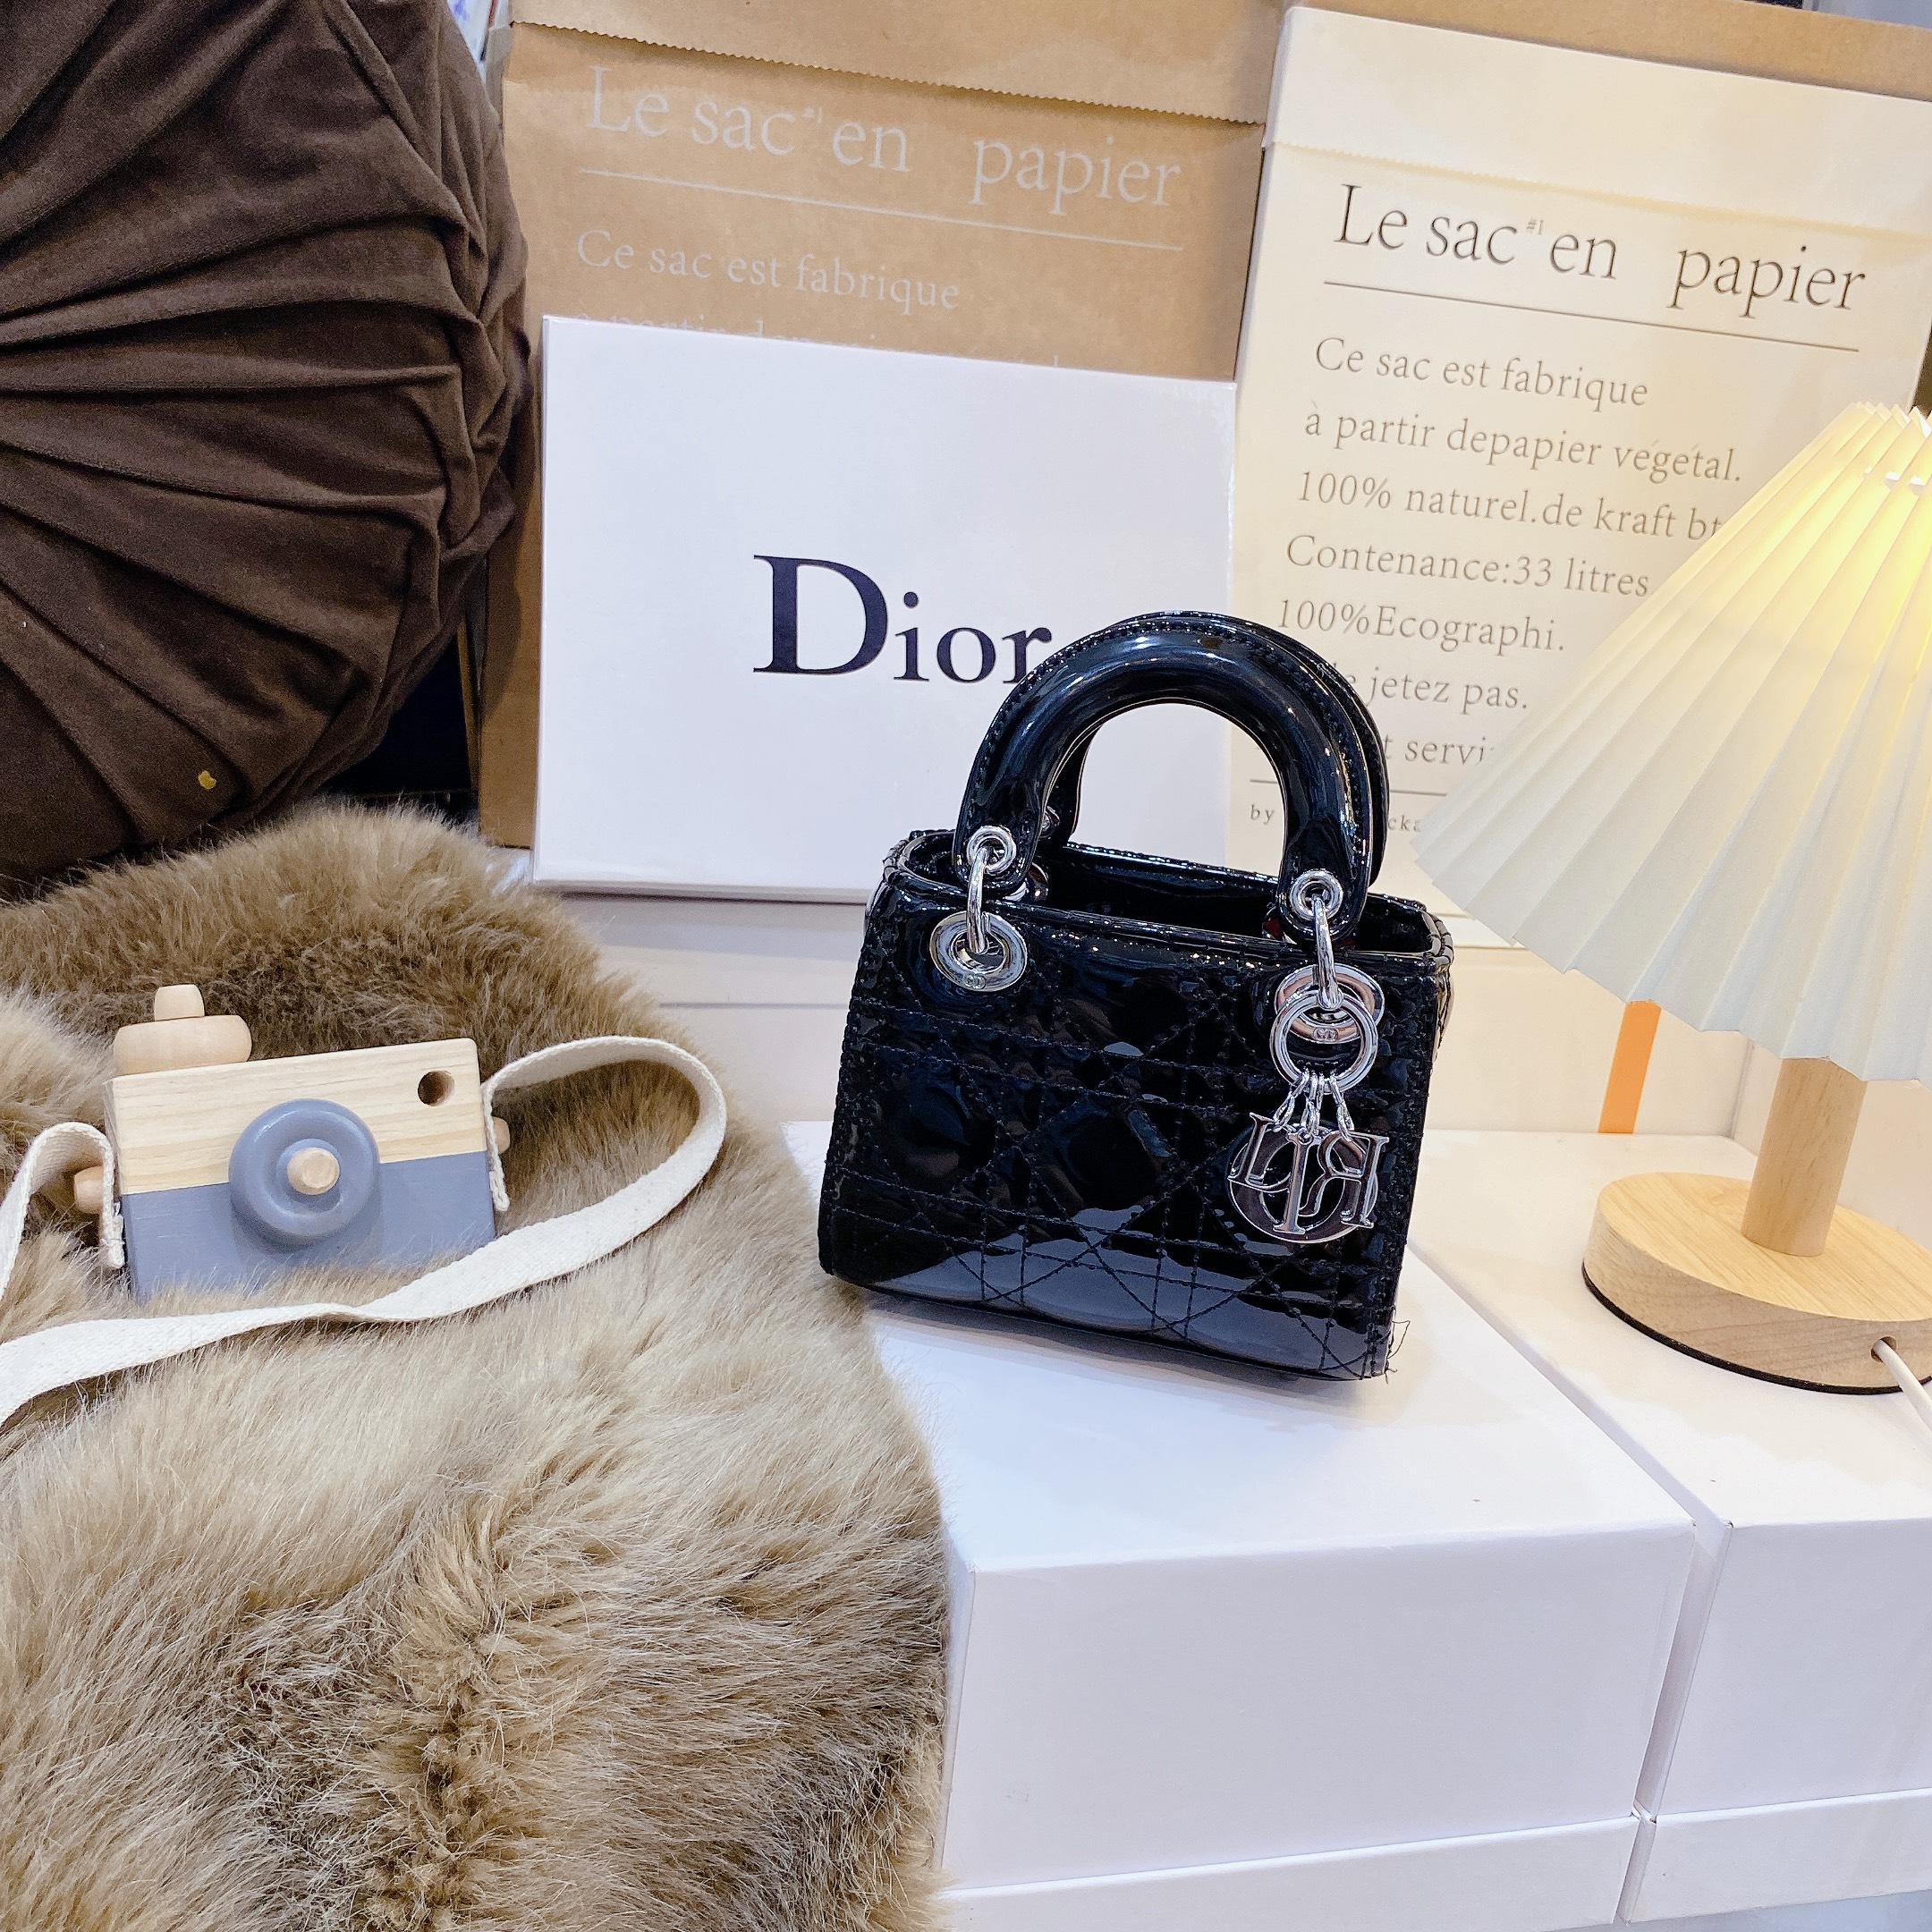 Mua Túi Xách Tay Dior Micro Lady DJoy Bag S0910ONGEM900 Màu Đen  Dior   Mua tại Vua Hàng Hiệu h072519